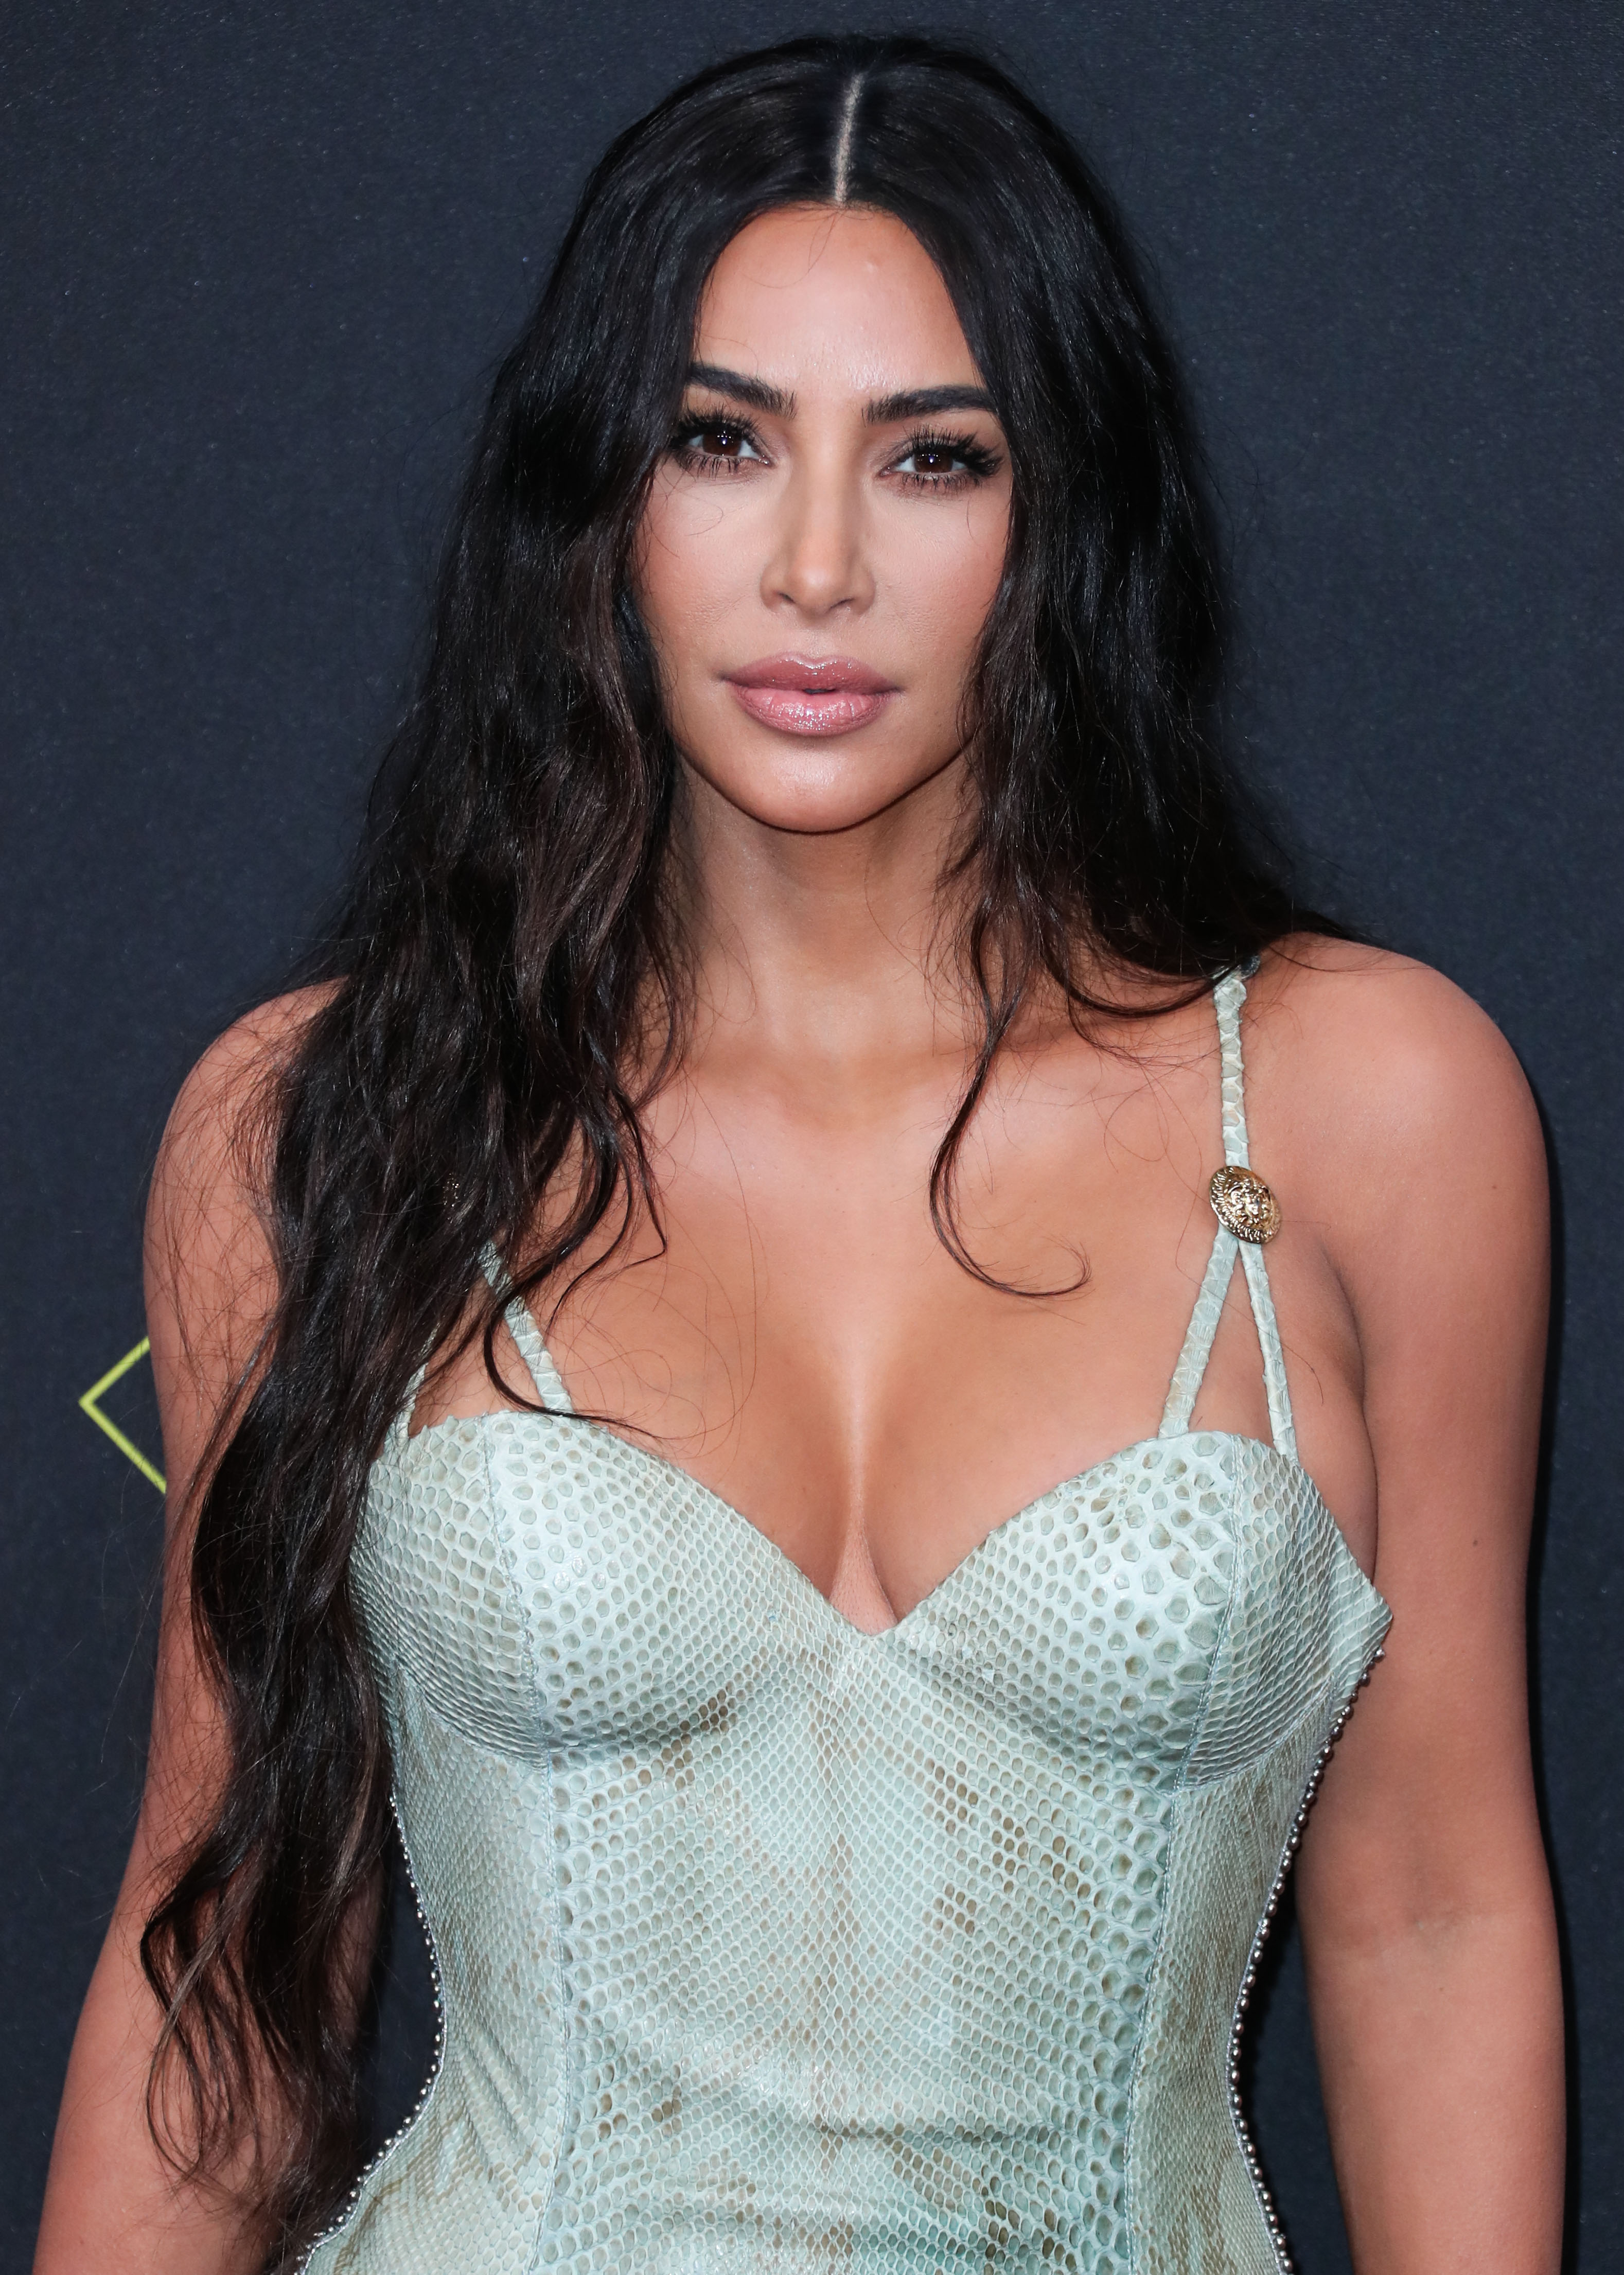 Η Kim Kardashian ανέβασε σε ένα 24ωρο φωτό στις οποίες είναι και ξανθιά και μελαχρινή. Εσύ πώς την προτιμάς;